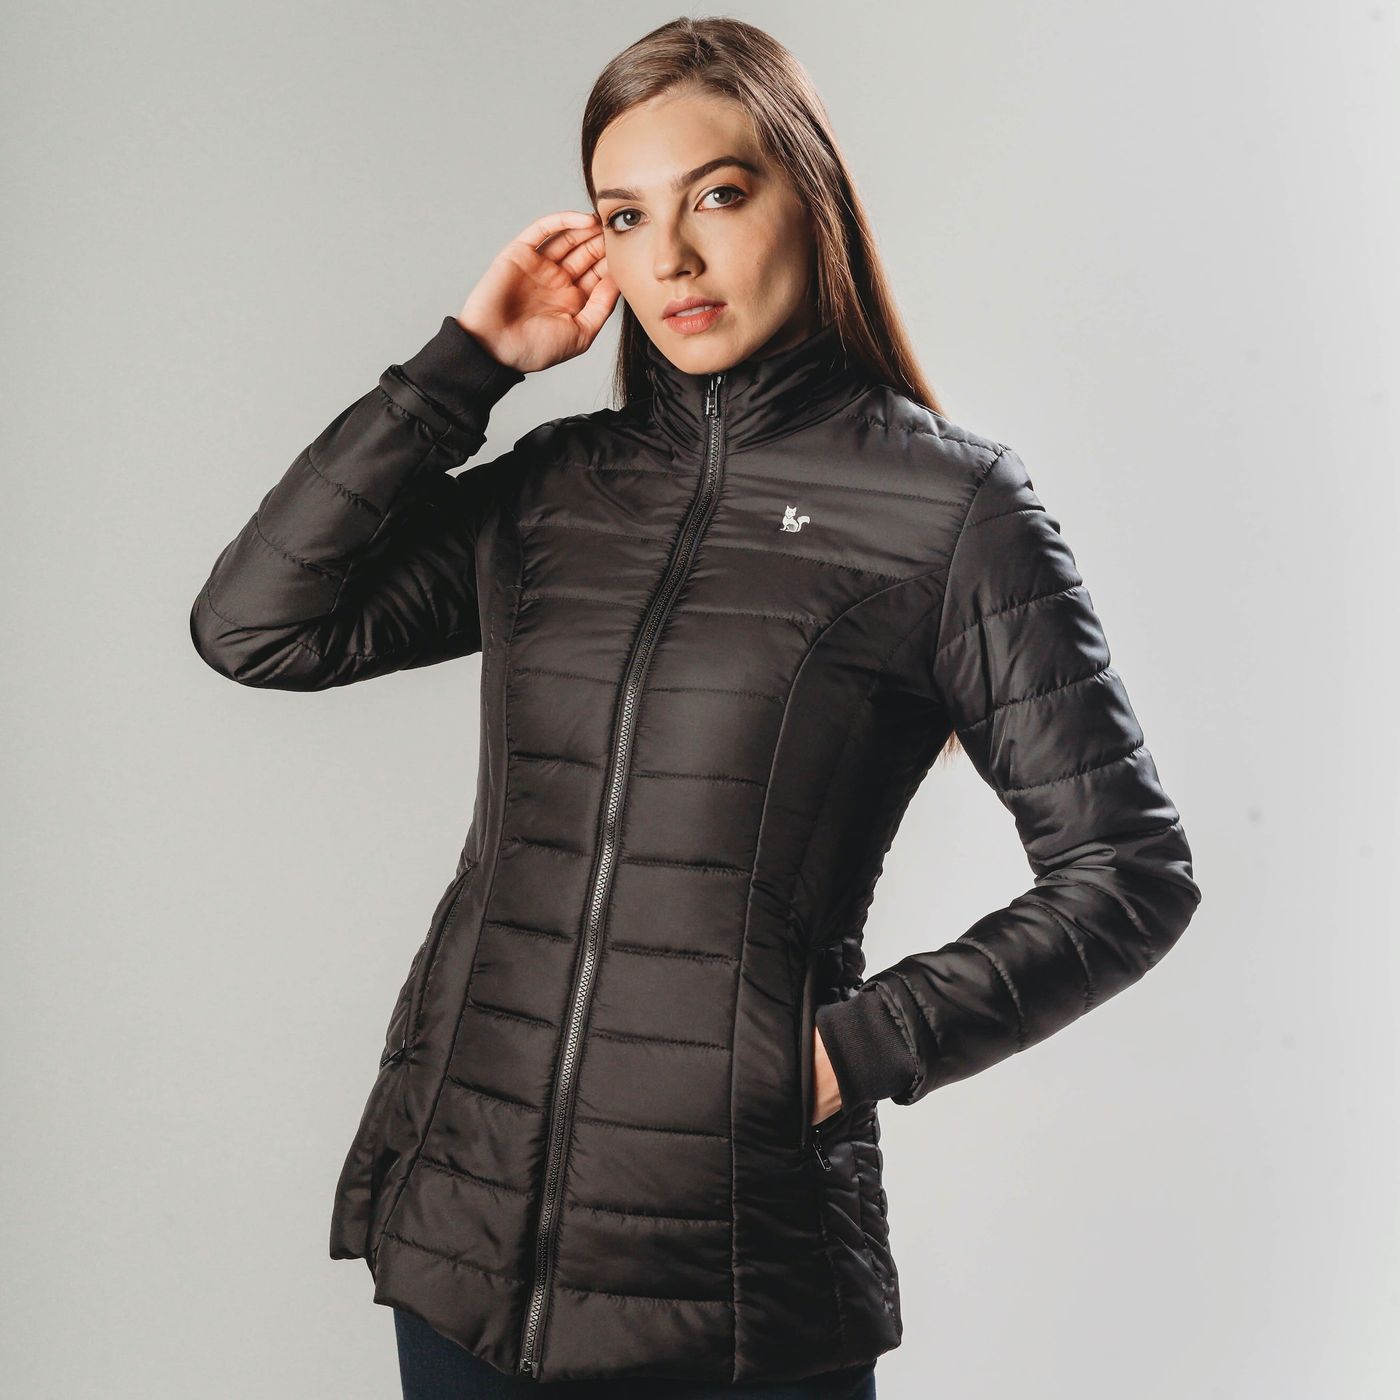 casaco termico para neve feminino